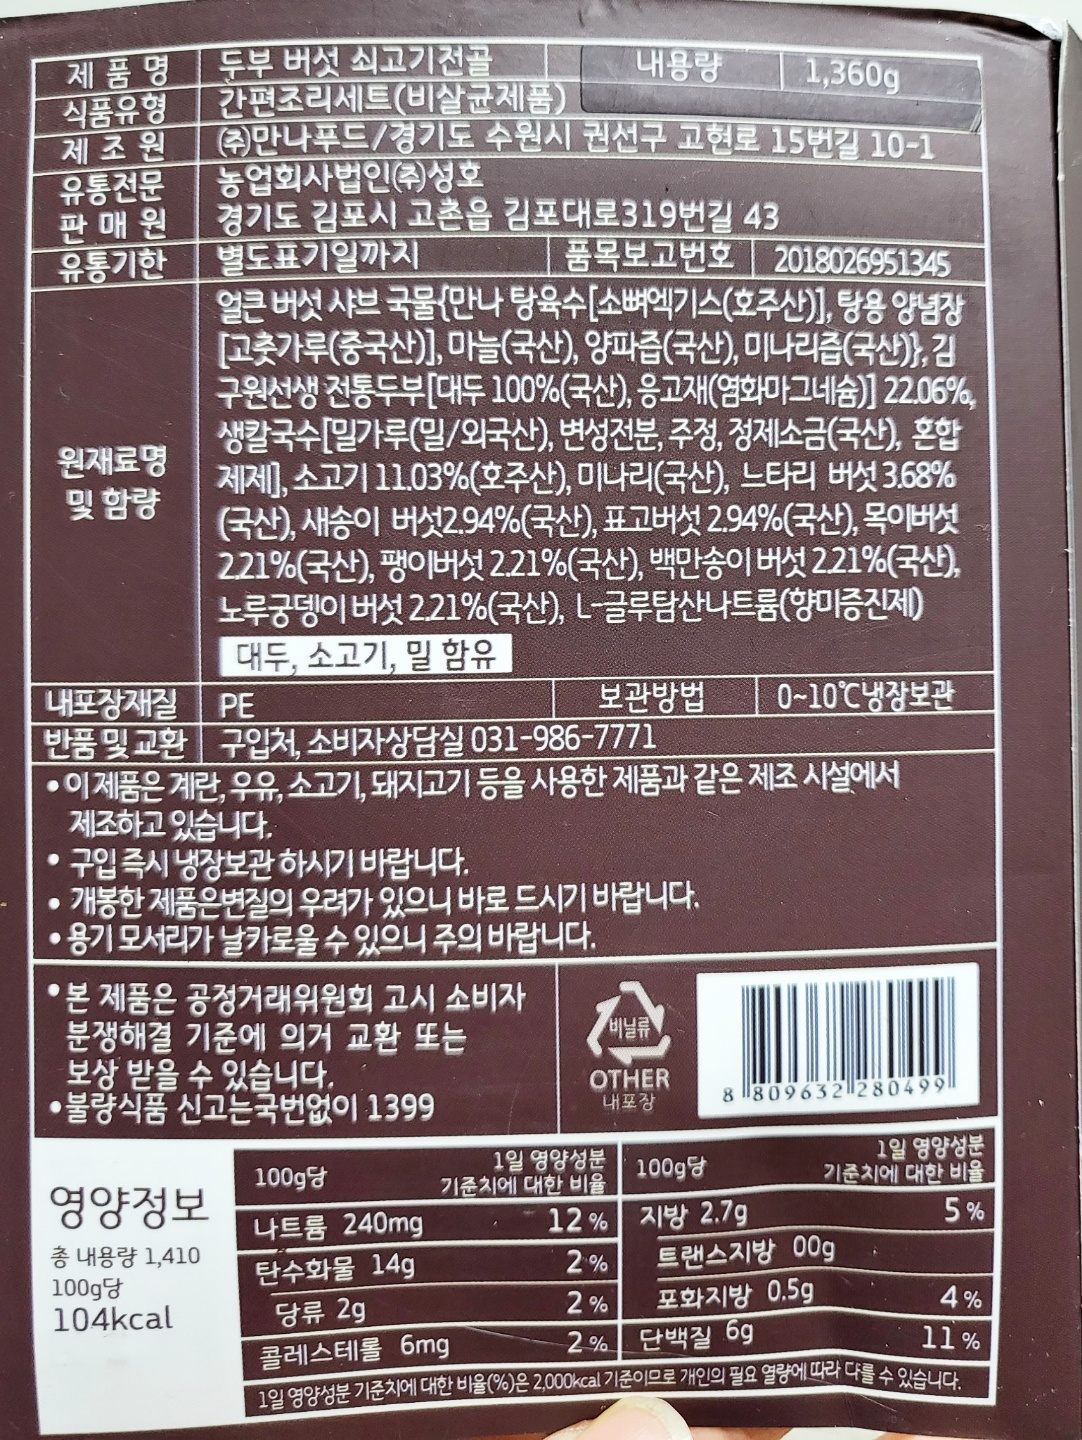 김구원선생 두부 버섯 쇠고기 전골 사진